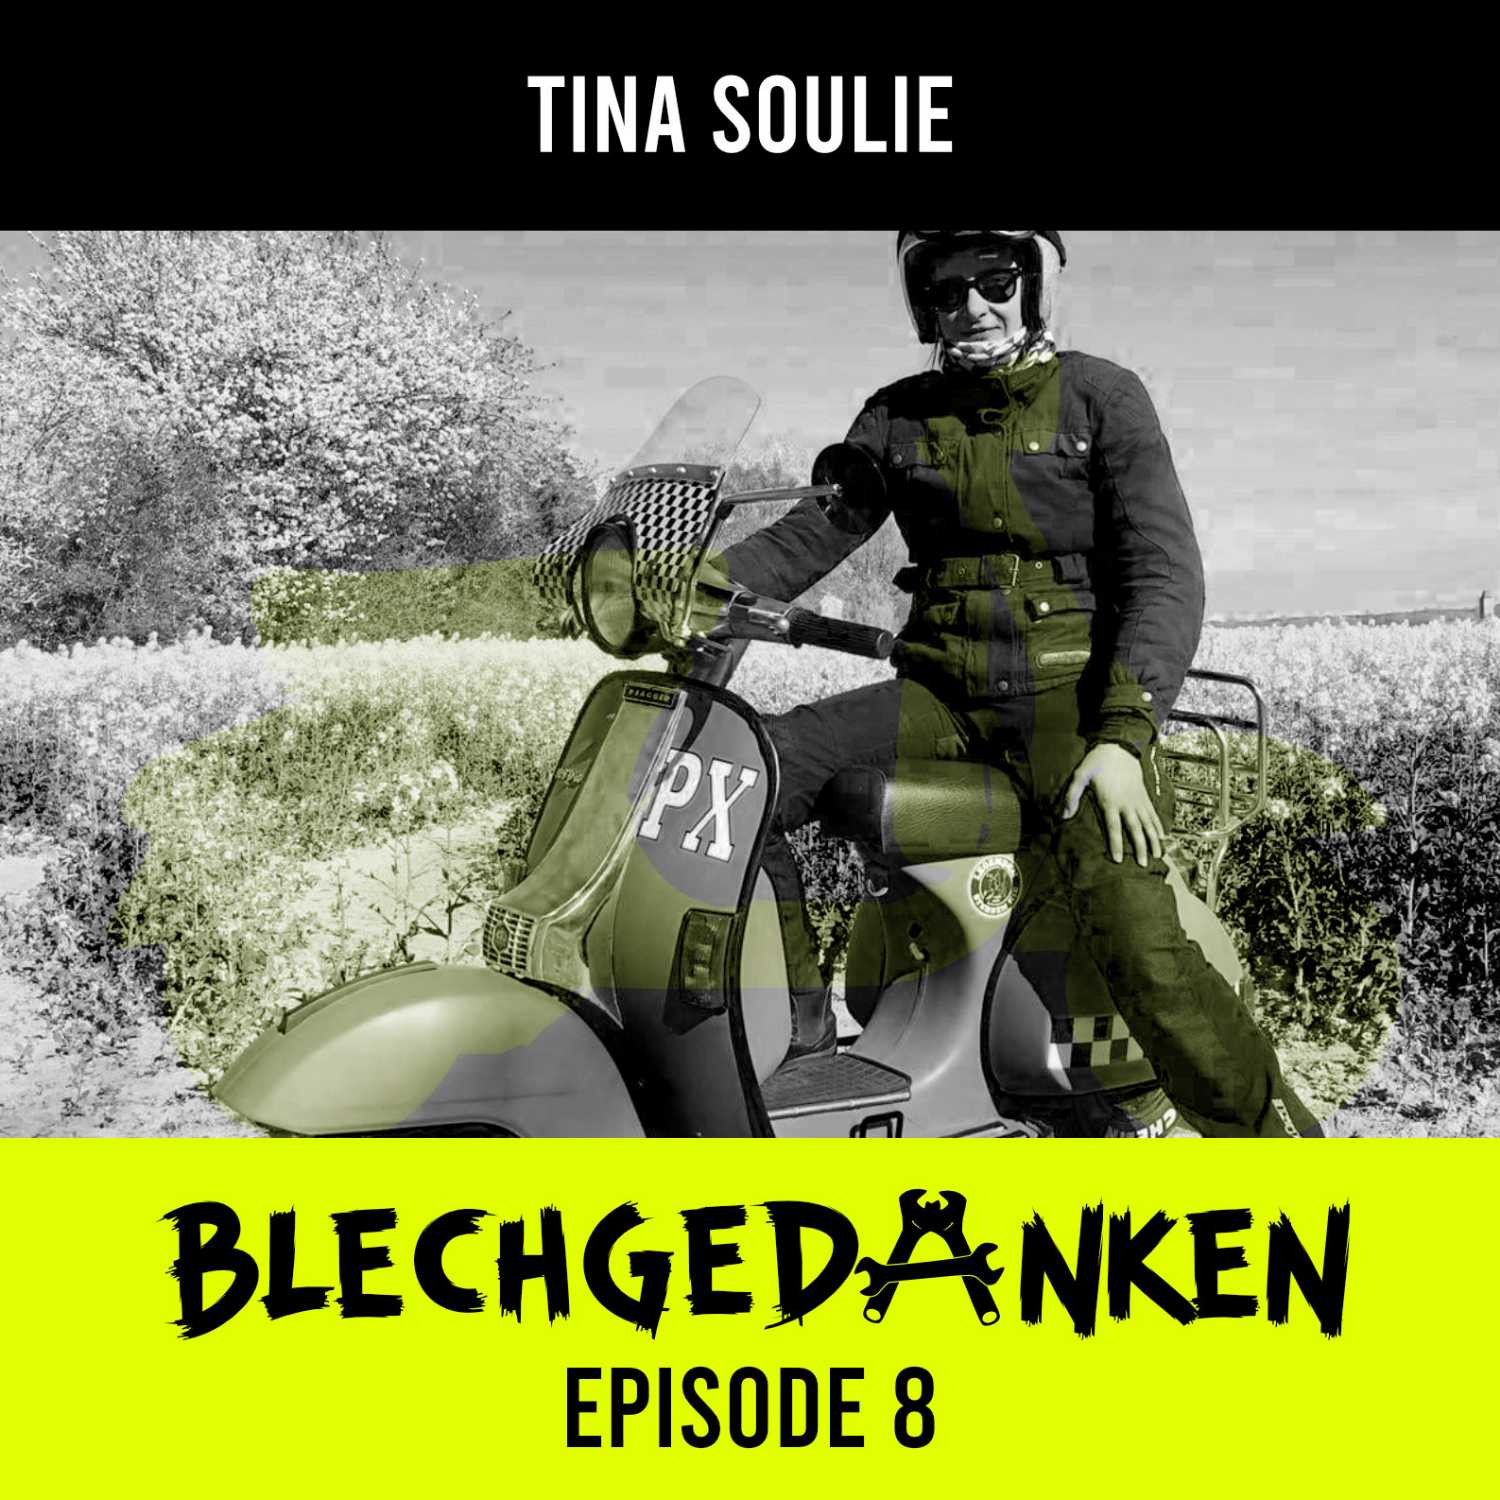 Blechgedanken Episode 8 – Tina Soulie- Denn soulige Schrauber:innen braucht unsere Vespacommunity!